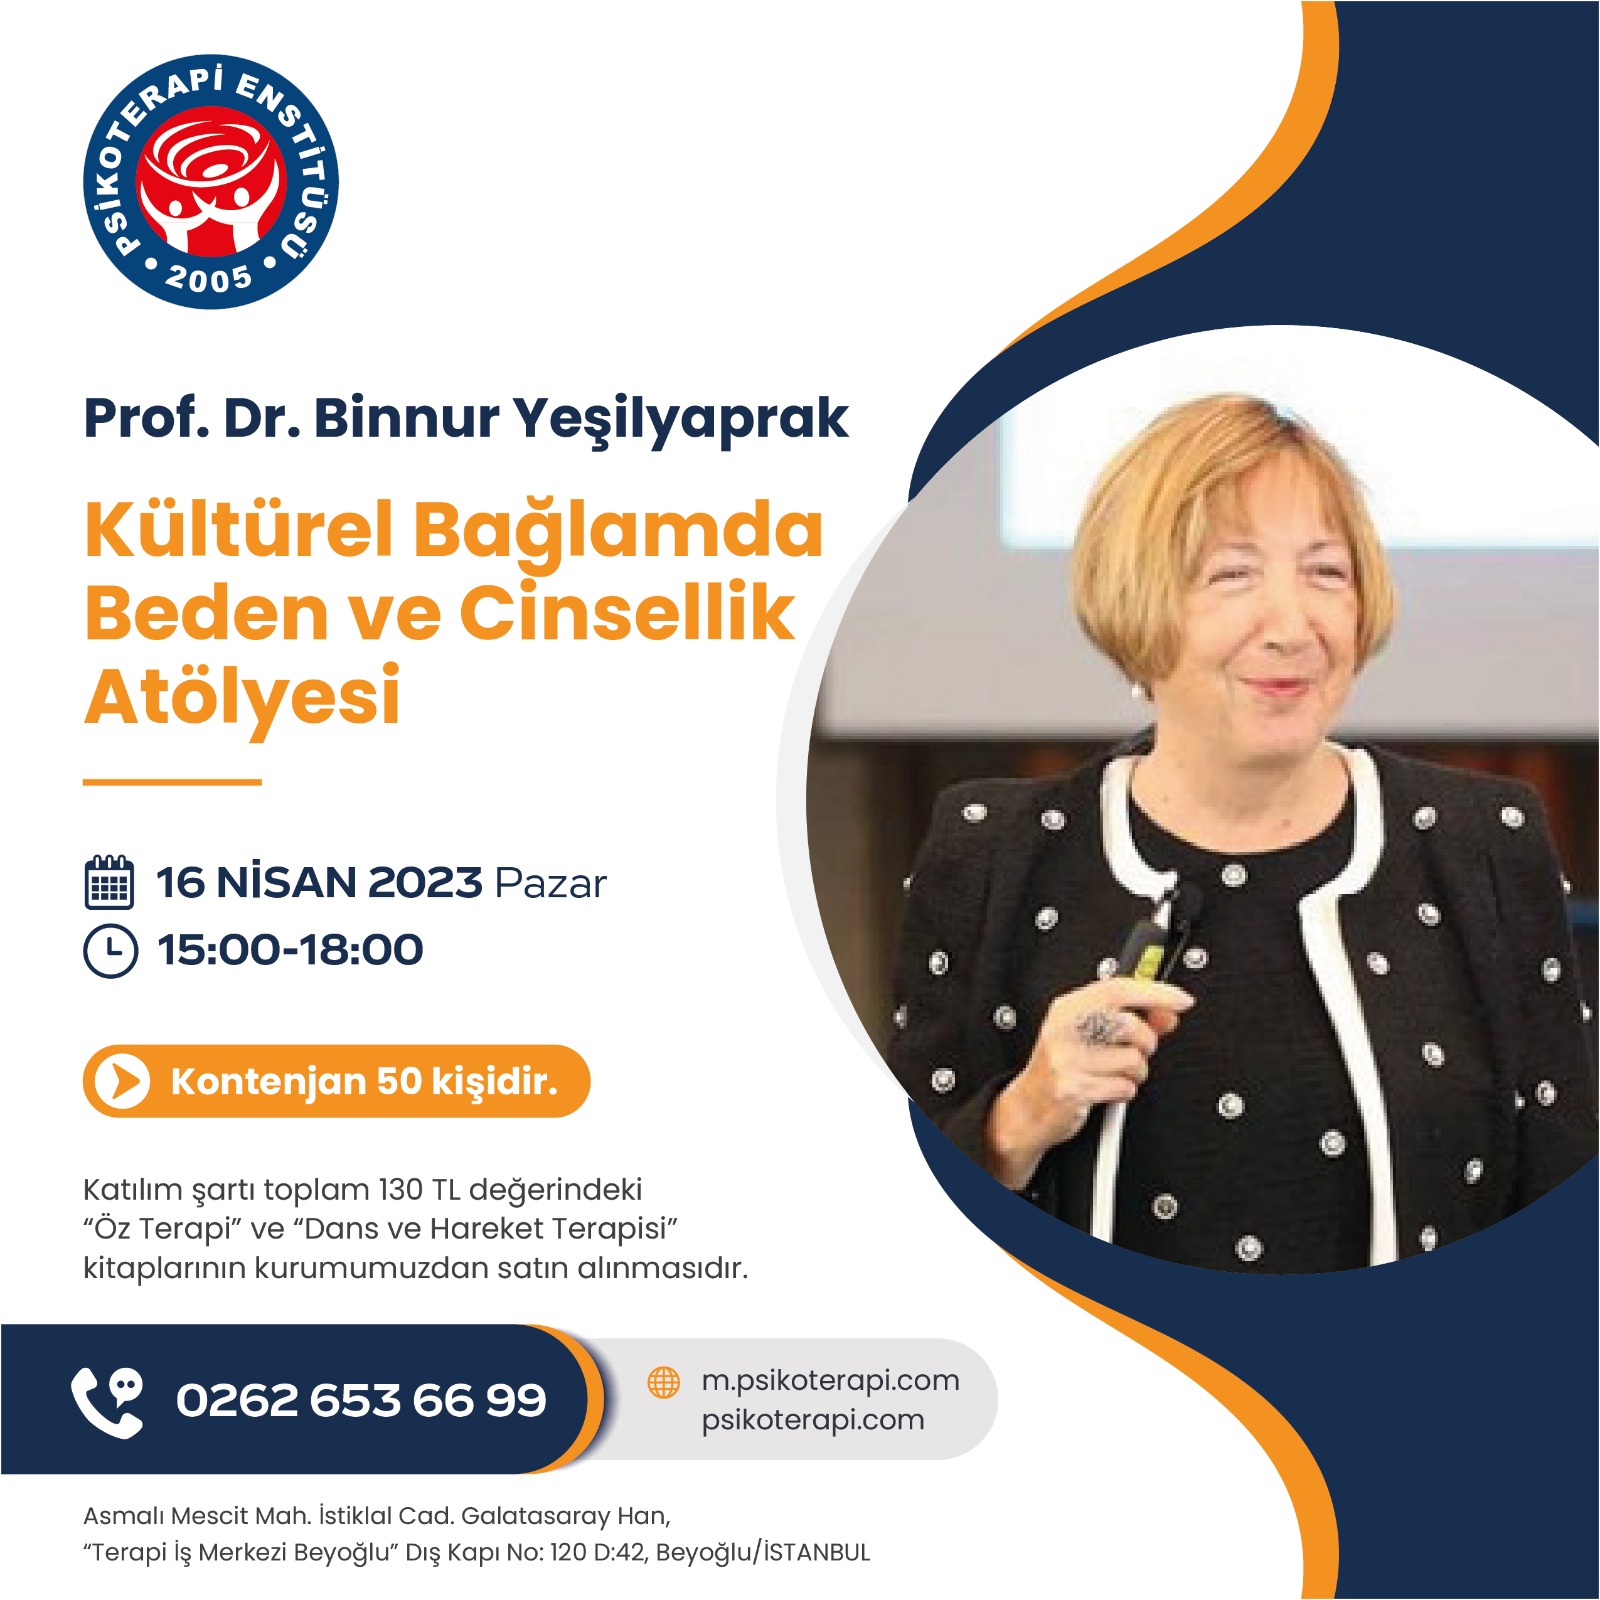 Prof. Dr. Binnur Yeşilyaprak "Kültürel Bağlamda Beden Ve Cinsellik Atölyesi"